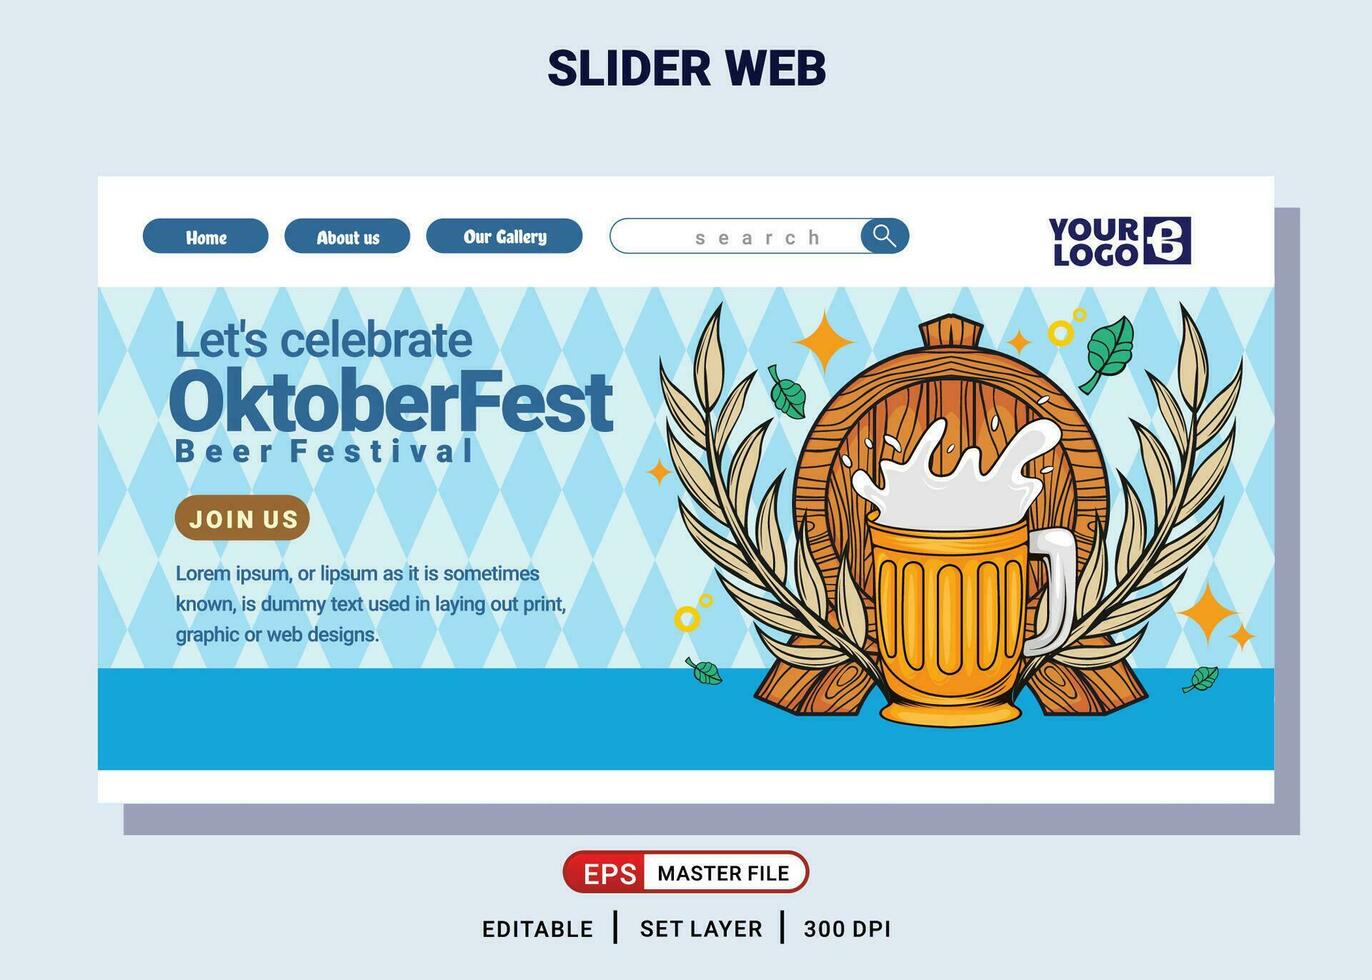 website landen bladzijde met illustratie van oktoberfeest bier festival vector